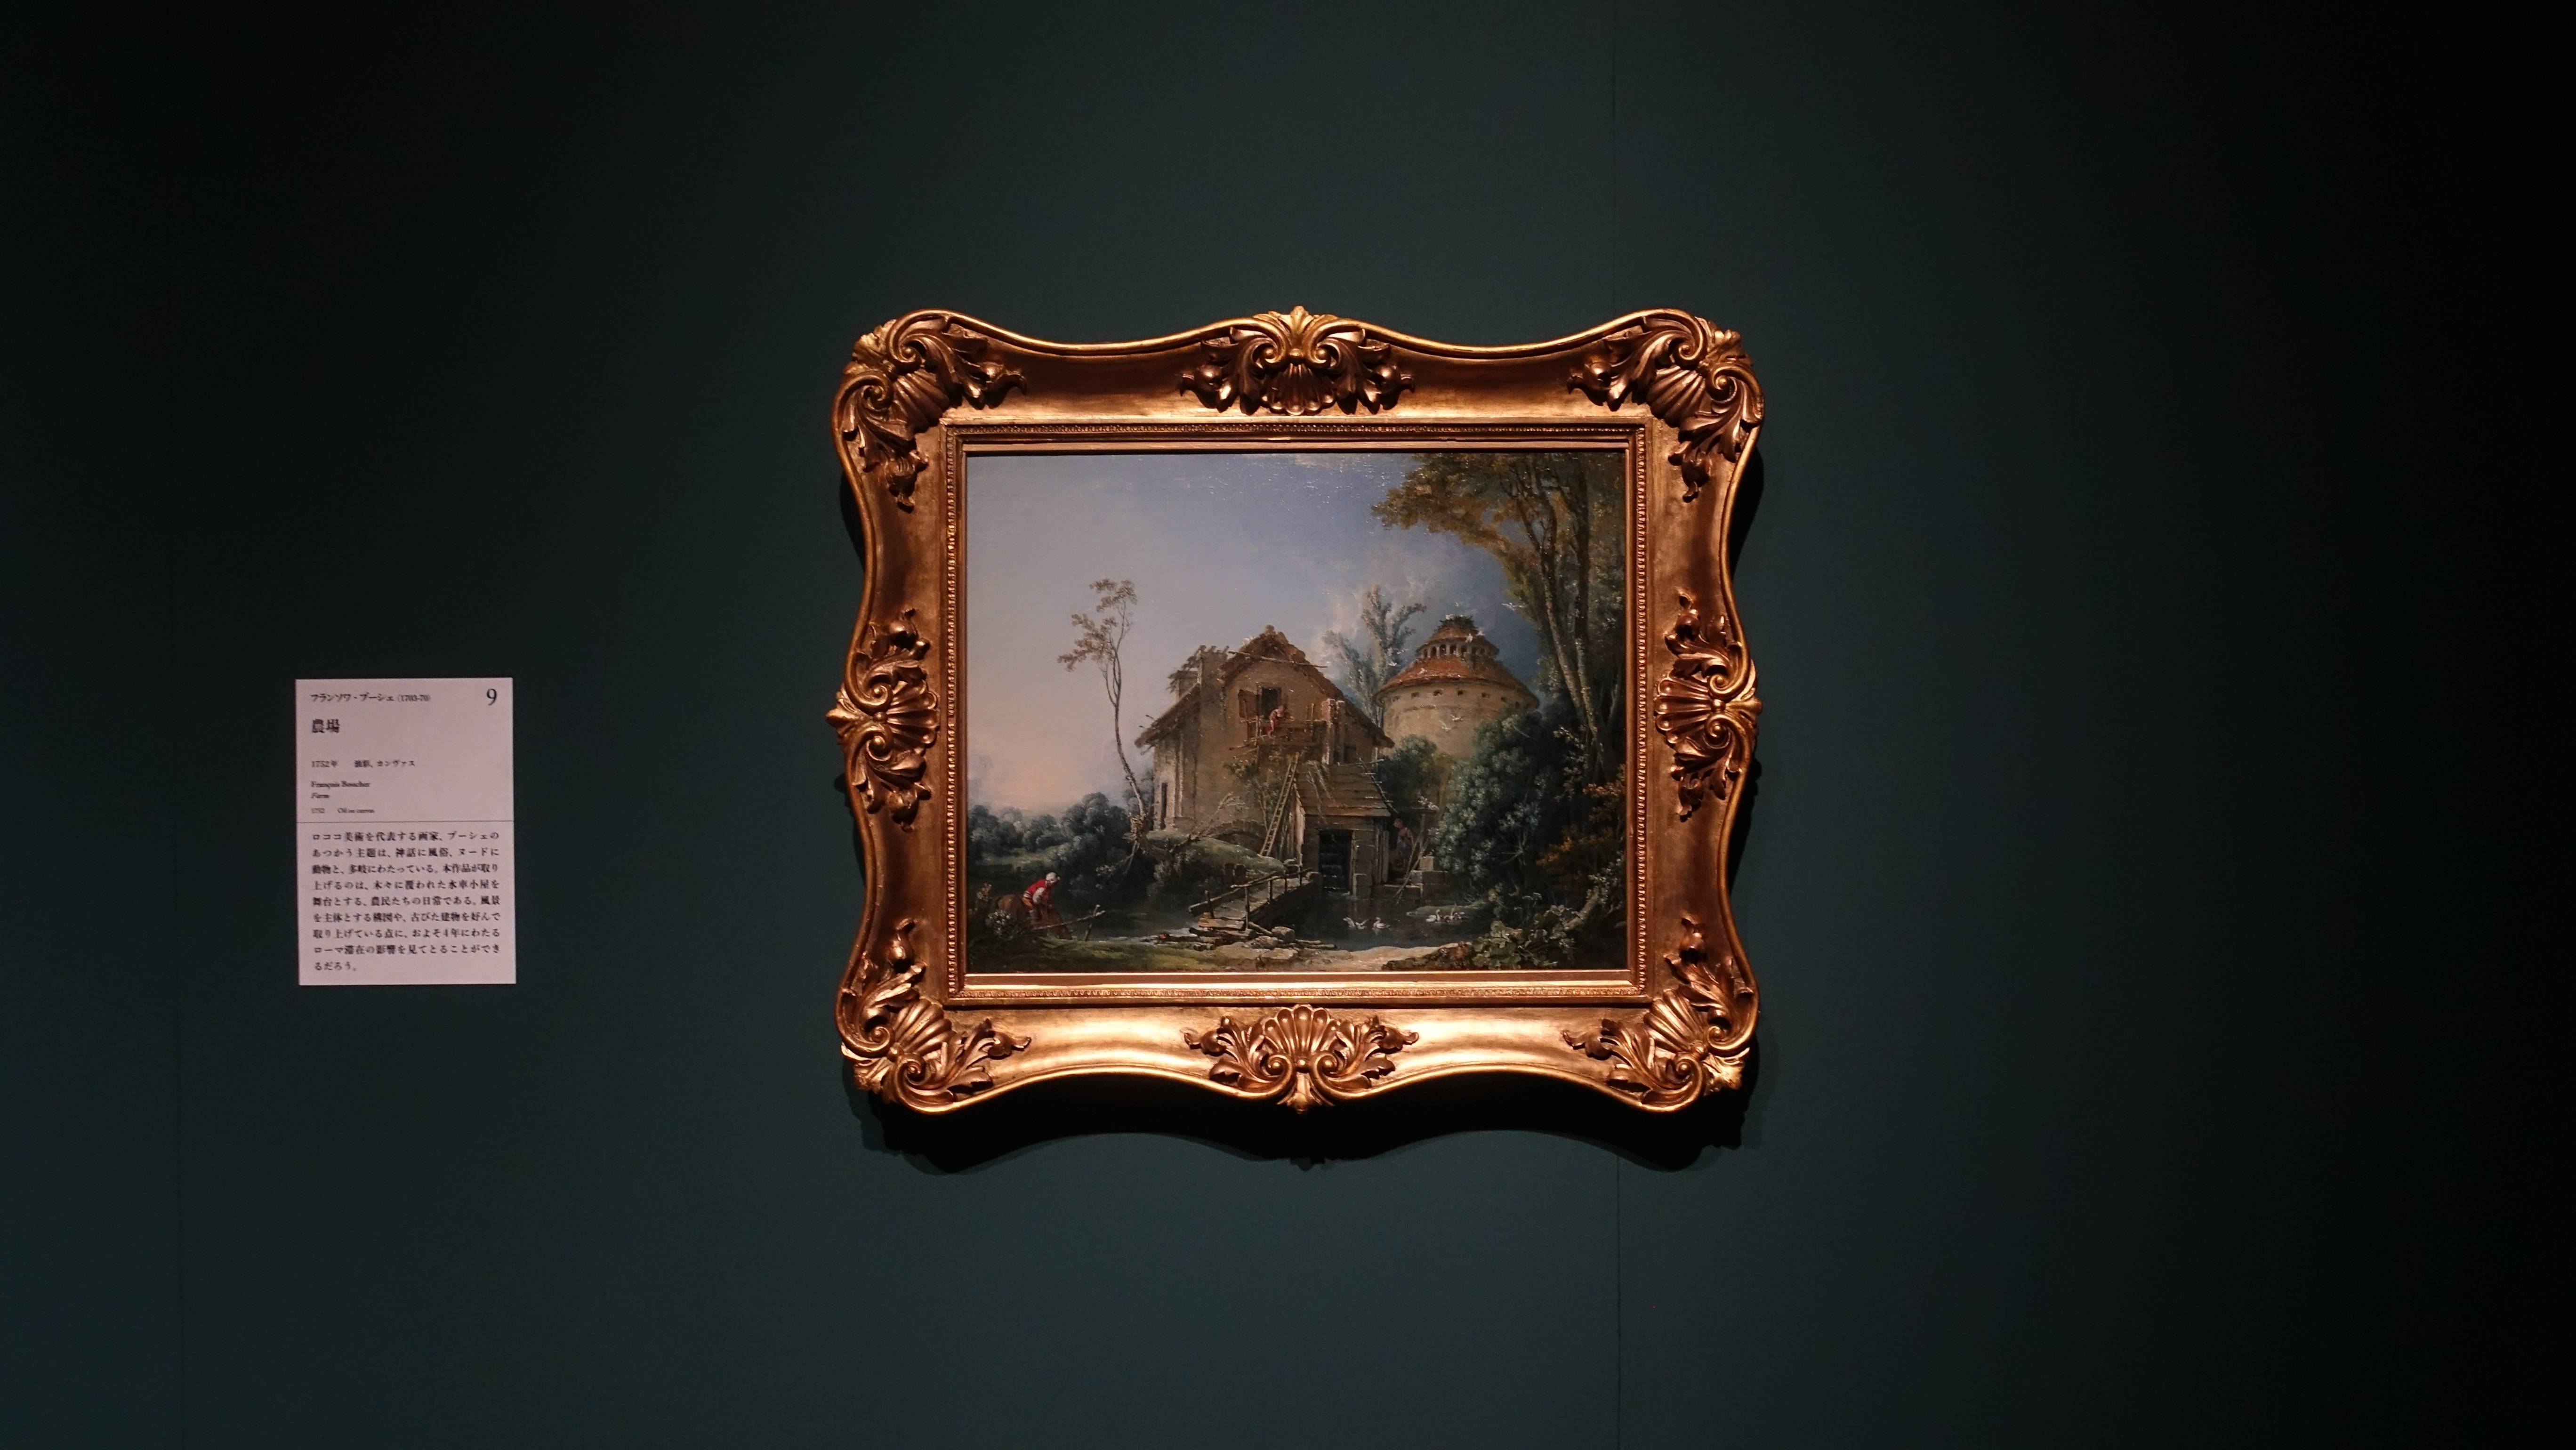 法蘭索瓦•布雪 François Boucher ，《田園 Farm》，油彩、畫布 Oil on canvas。